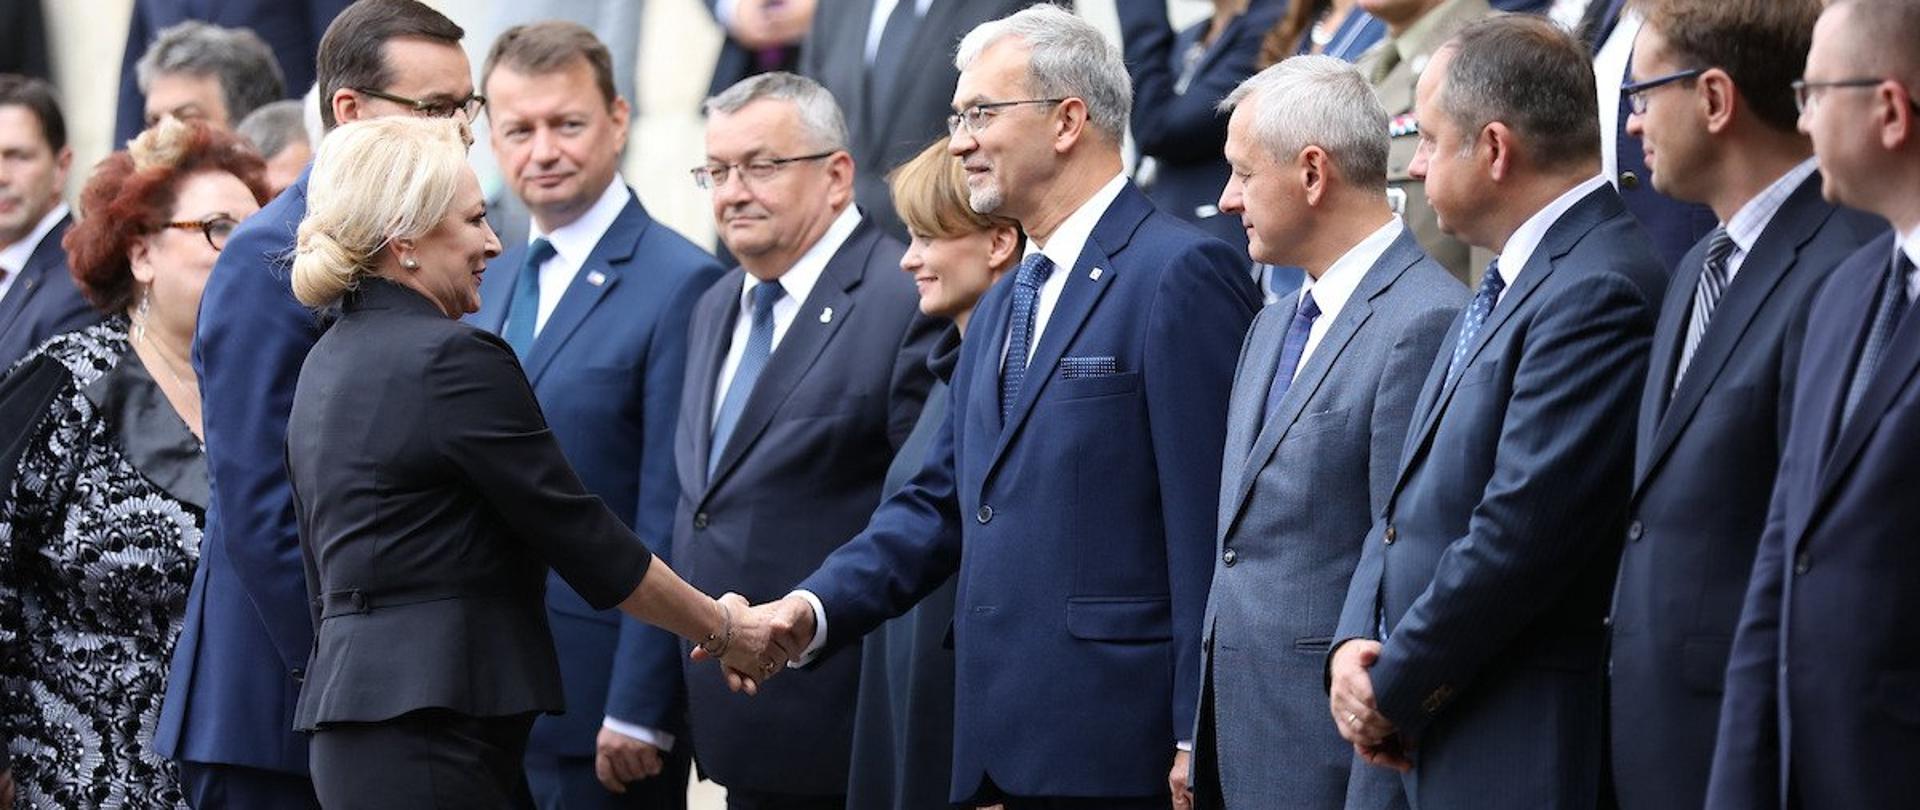 W rzędach stoi grupa ludzi. Witają się z nimi premierzy Polski i Rumunii. Minister Jerzy Kwieciński podaje rękę premier Rumunii.